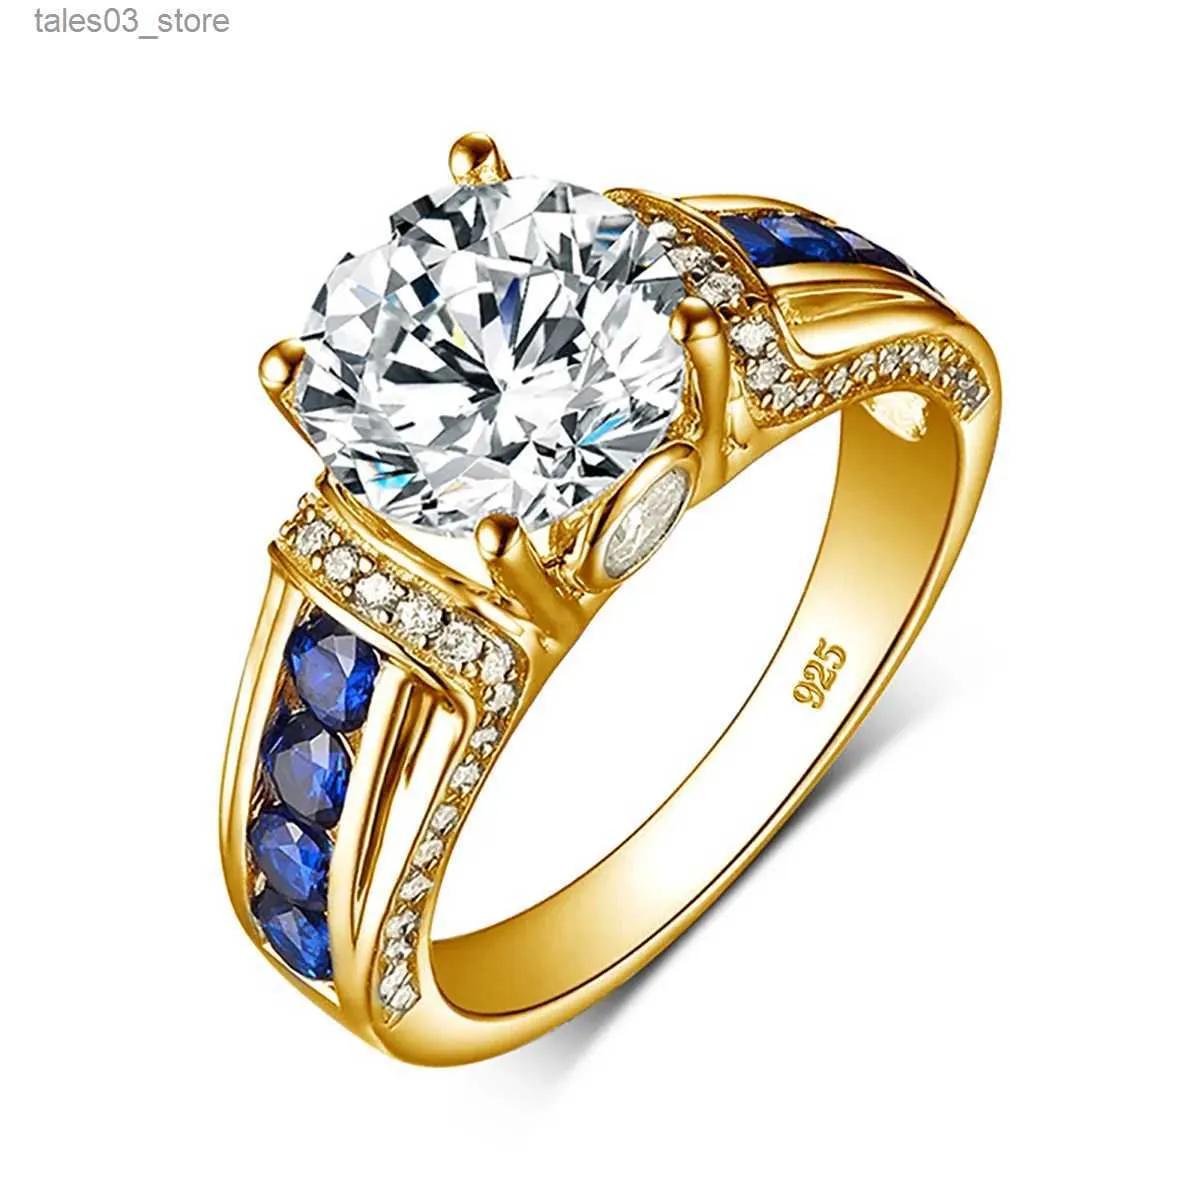 Anneaux de mariage Certifié D couleur VVS1 2ct Moissanite bague en diamant pour les femmes % argent Sterling bonne qualité bijoux de mariage passer le Test de diamant Q231024